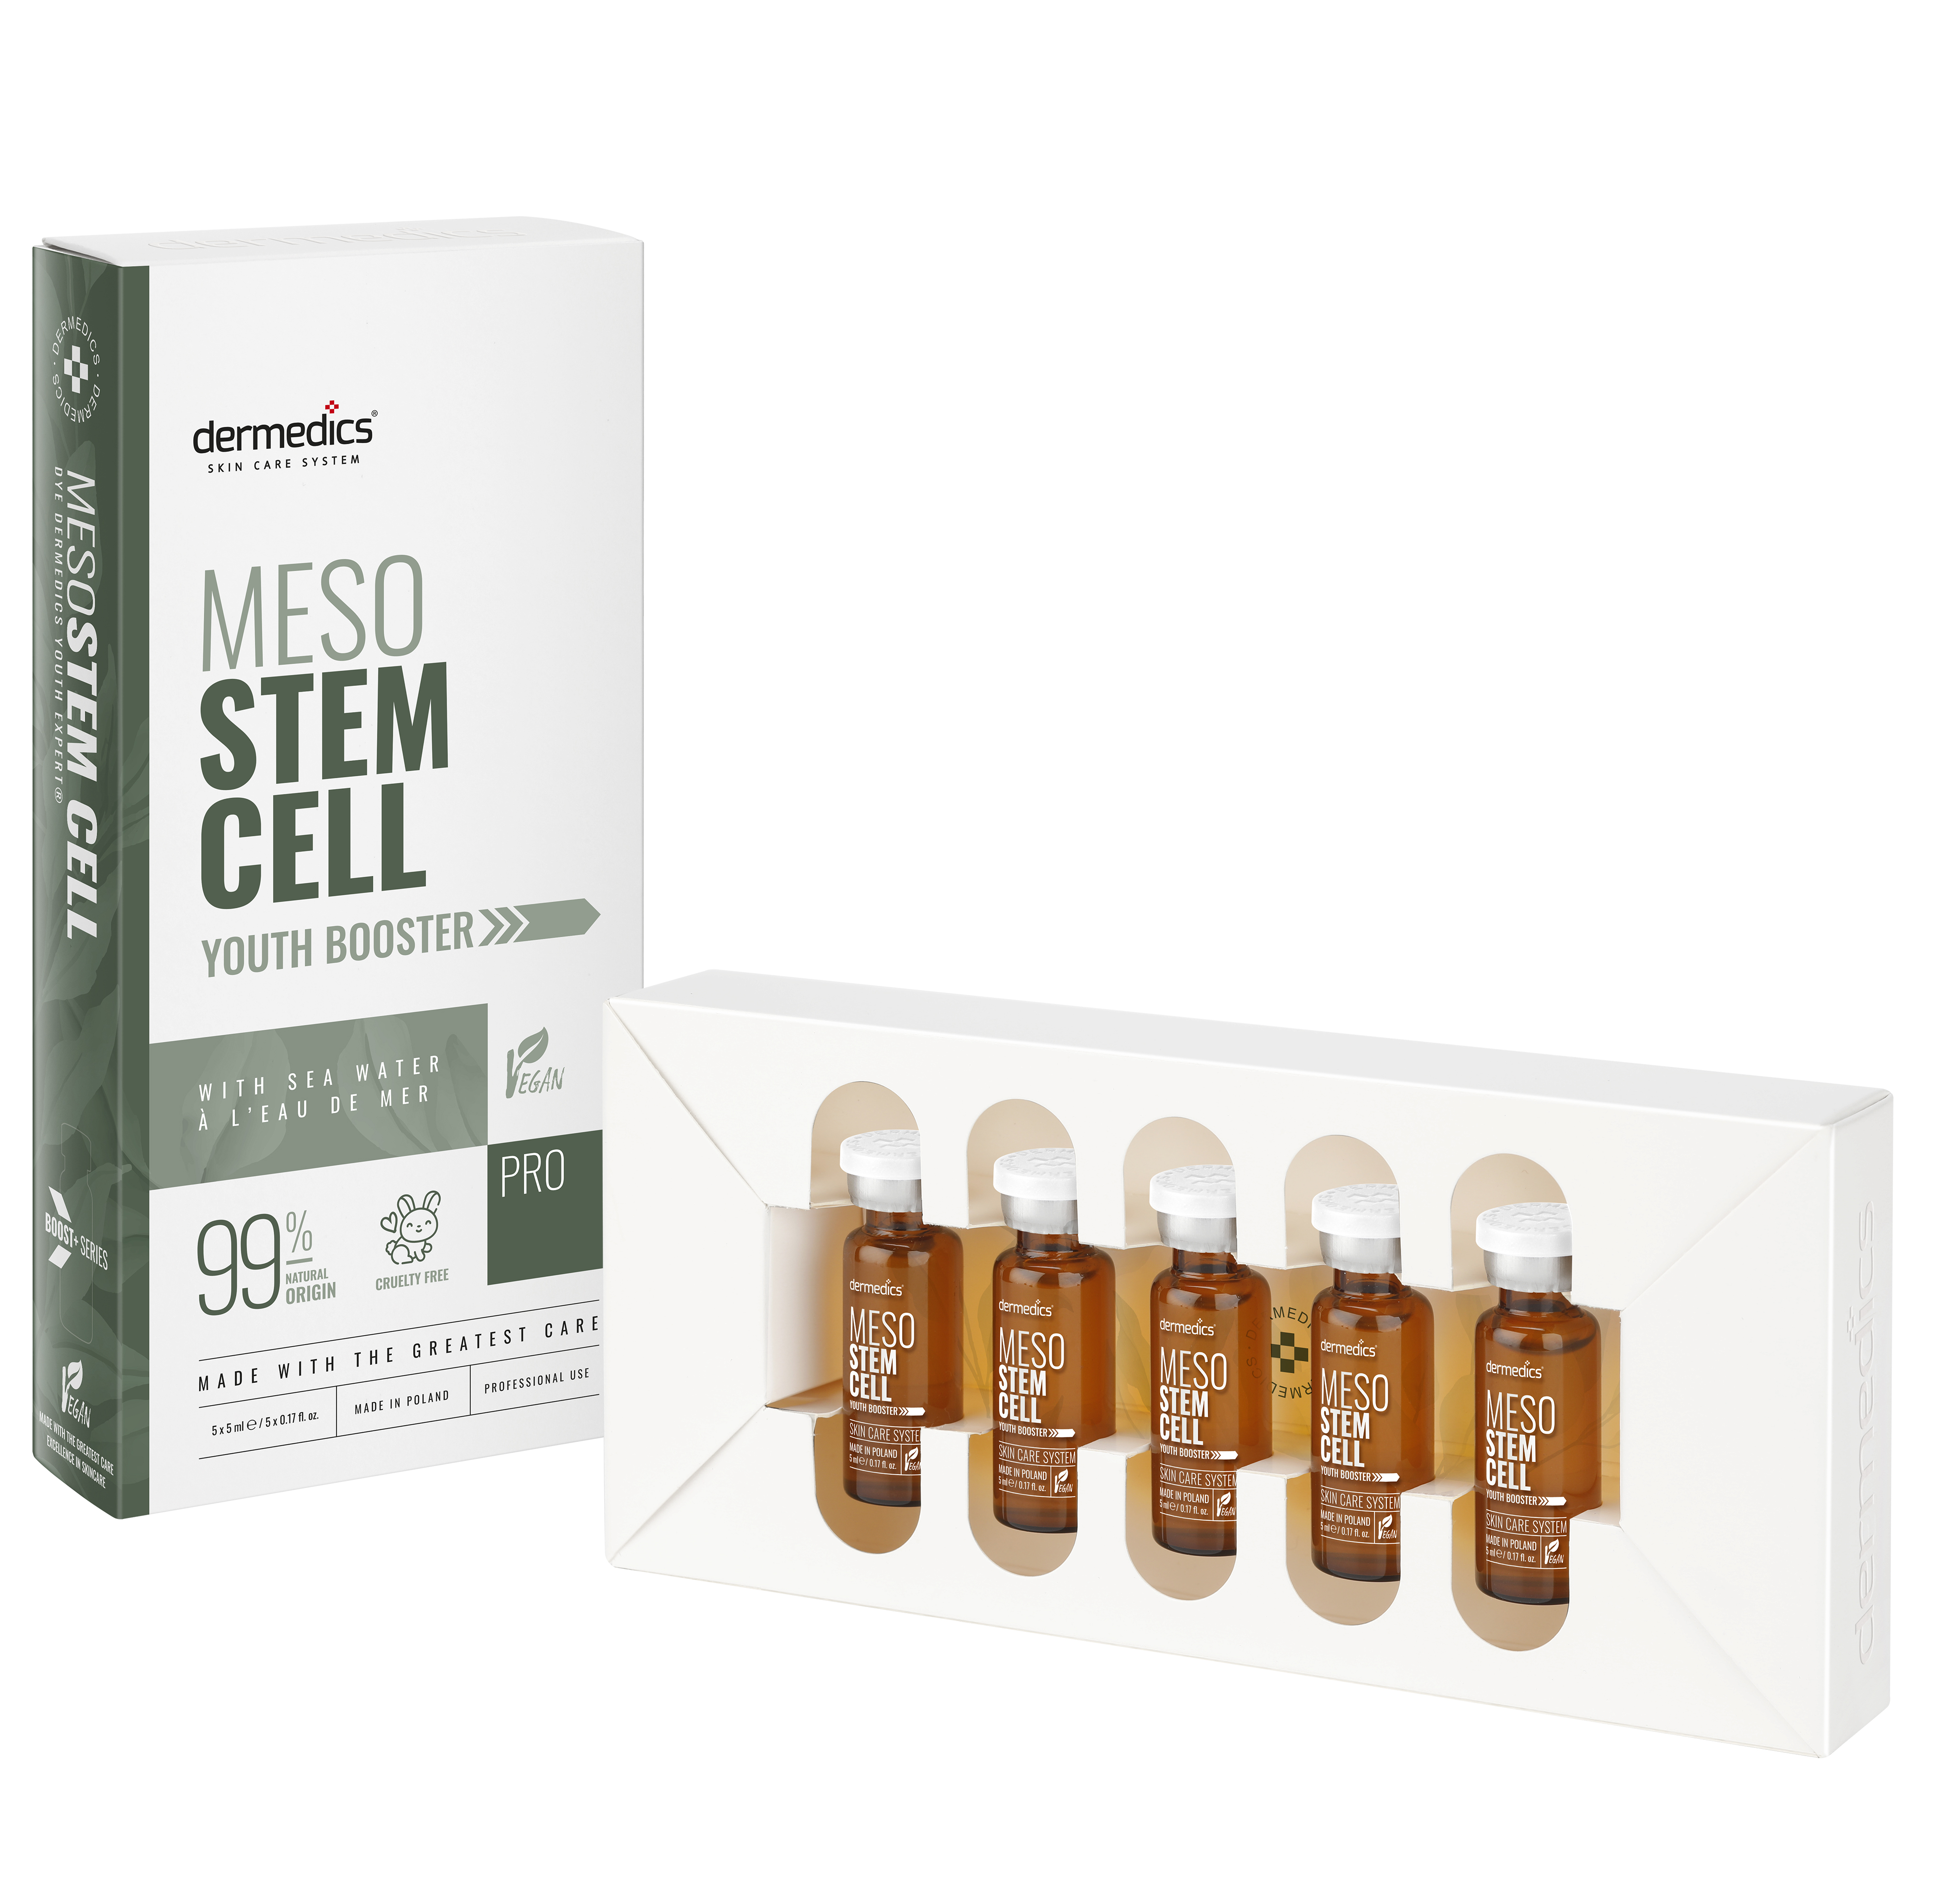 BB Glow Dermedics meso boost+ Stem Cell elixir ampoule